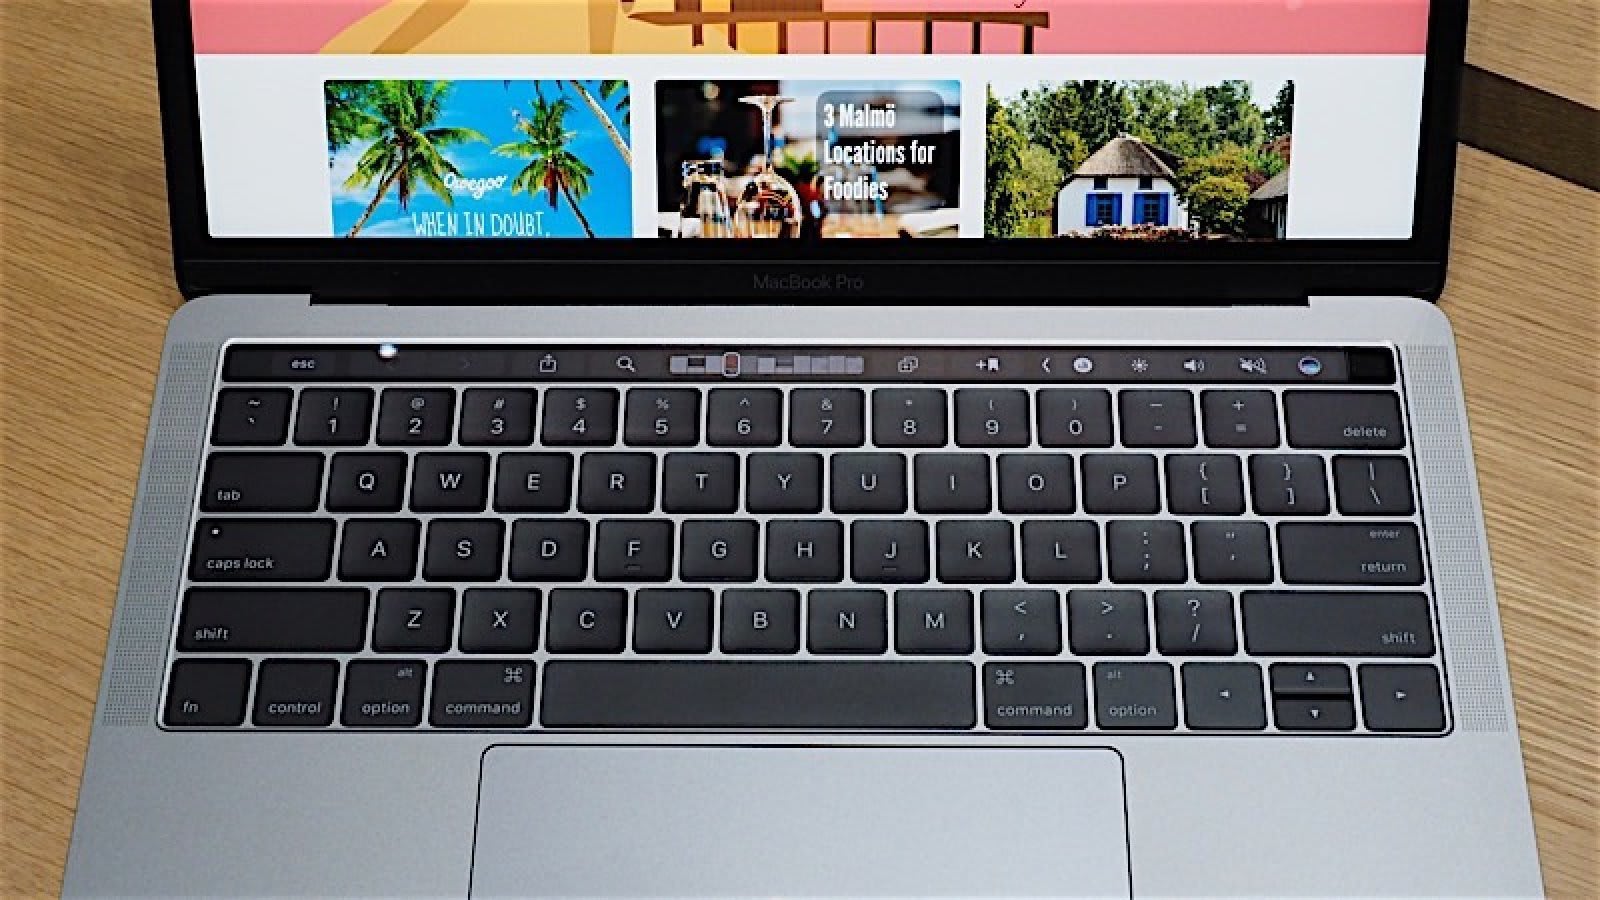 MacBook Proの一部で生じる画面トラブル「ステージライト」、2018年版でケーブル長くし密かに対策か - Engadget 日本版